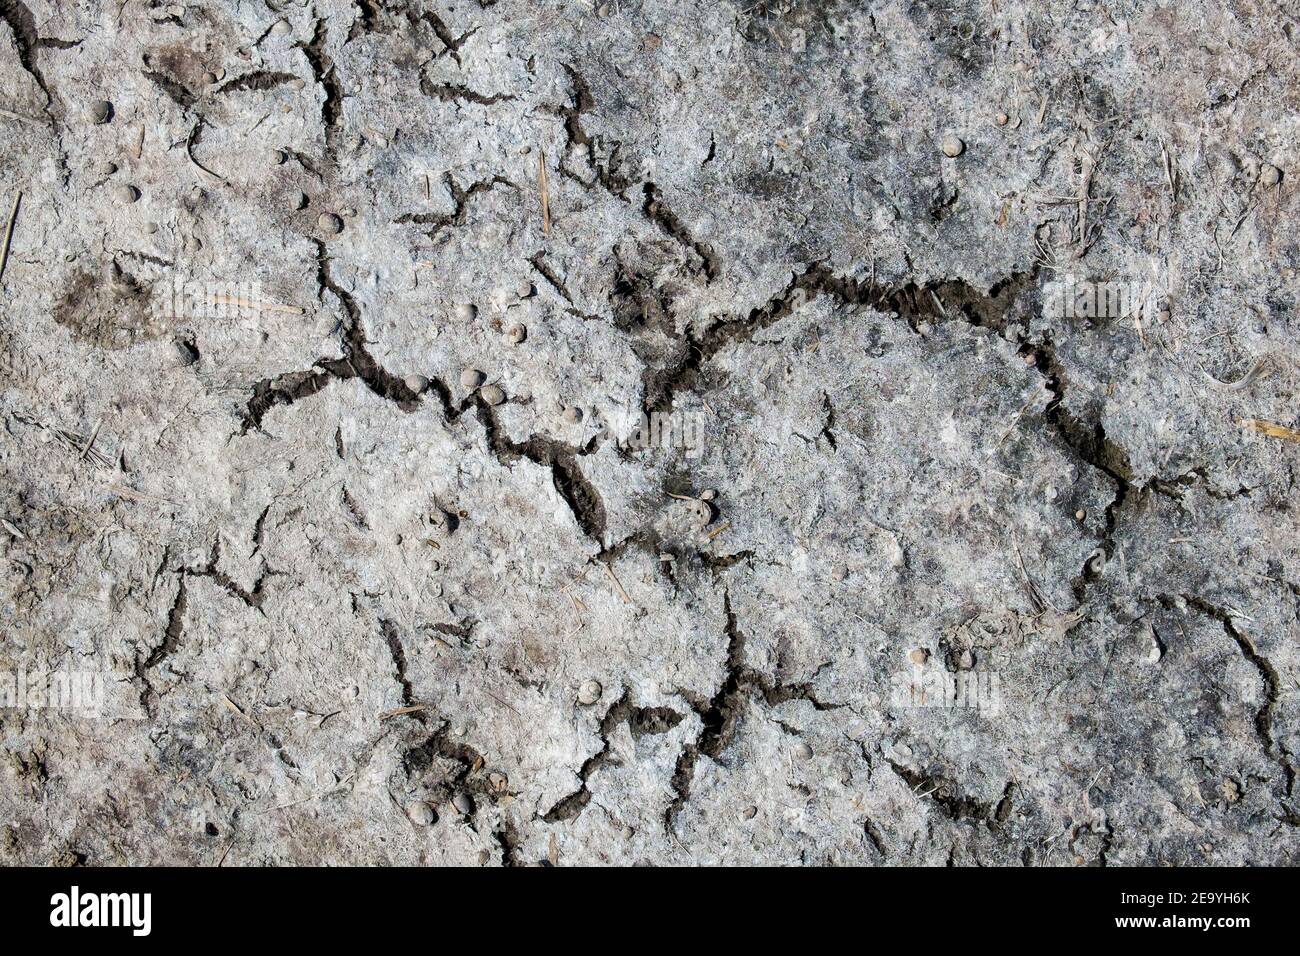 Textura de tierra seca agrietada con pequeñas conchas marinas Foto de stock